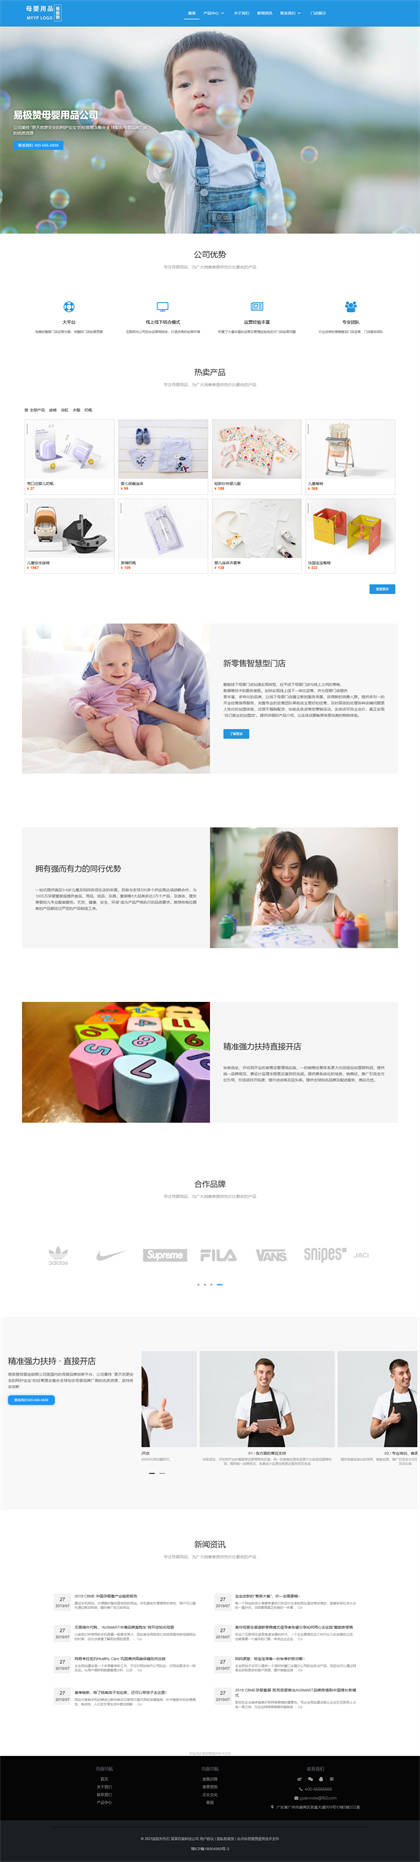 儿童用品-母婴用品-儿童玩具网站模板网站模板预览图片